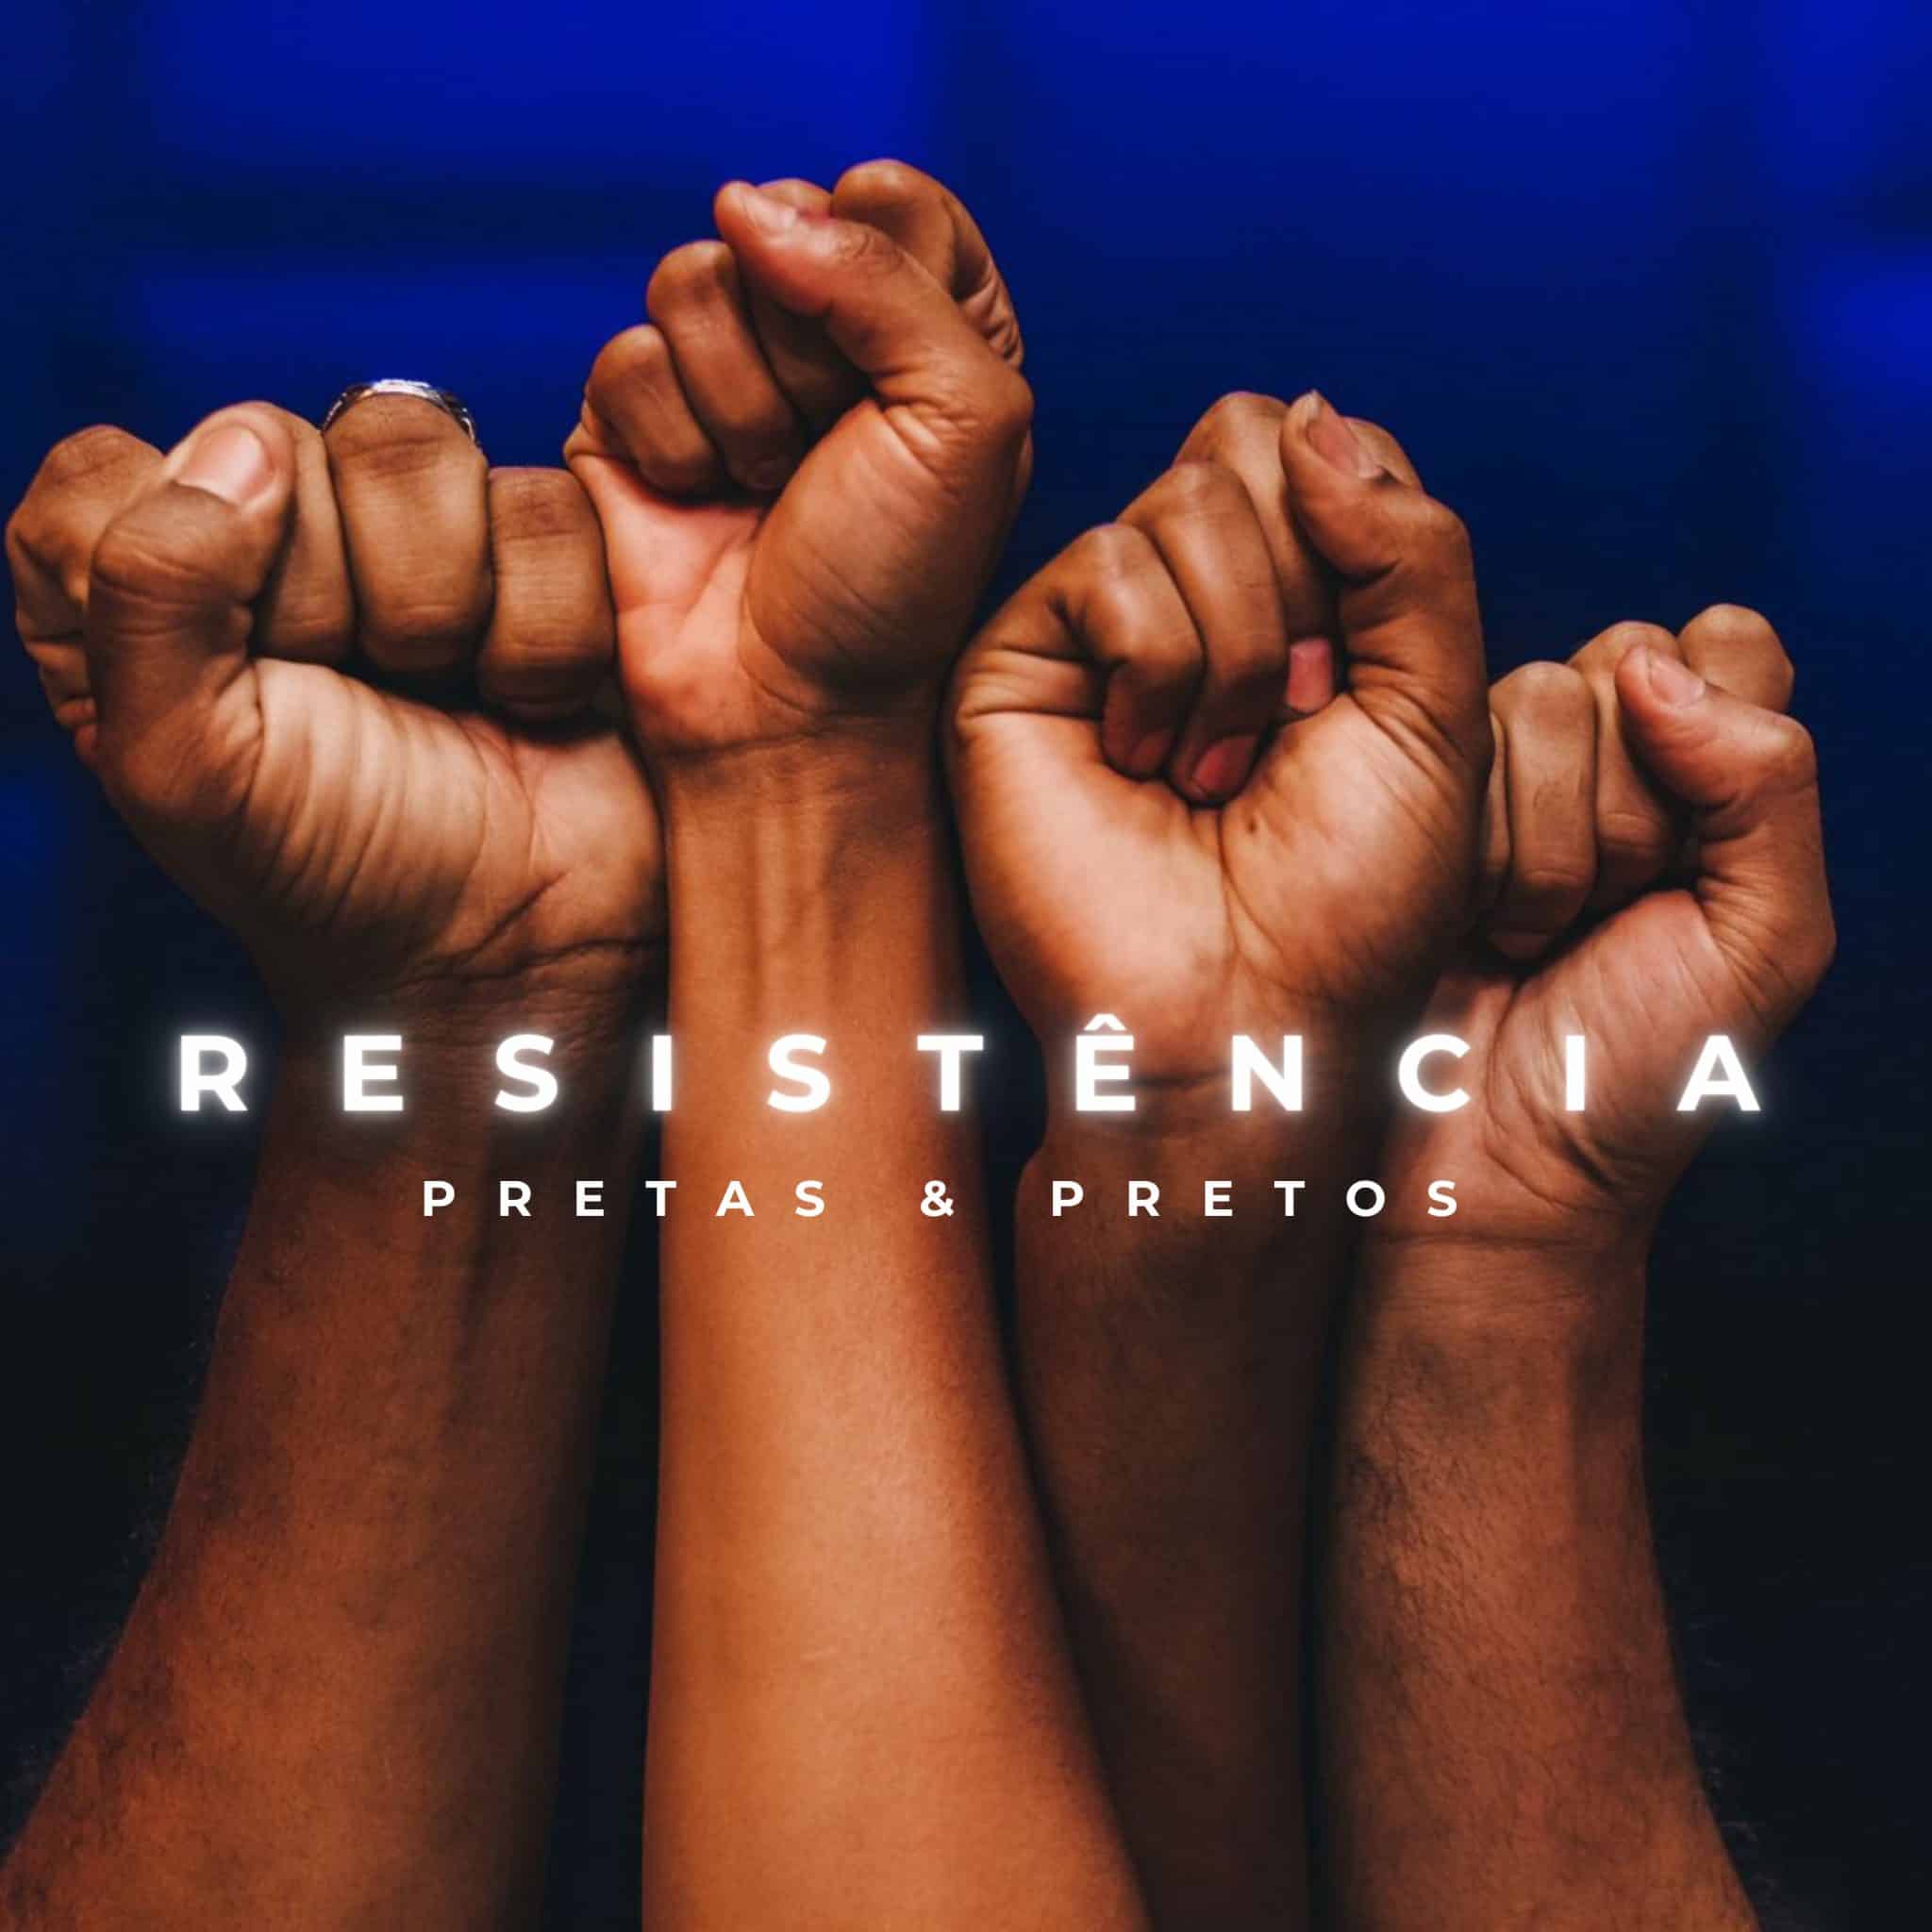 revistaprosaversoearte.com - Grupo Pretas & Pretos lança EP 'Resistência', com 'Tributo a Martin Luther King'